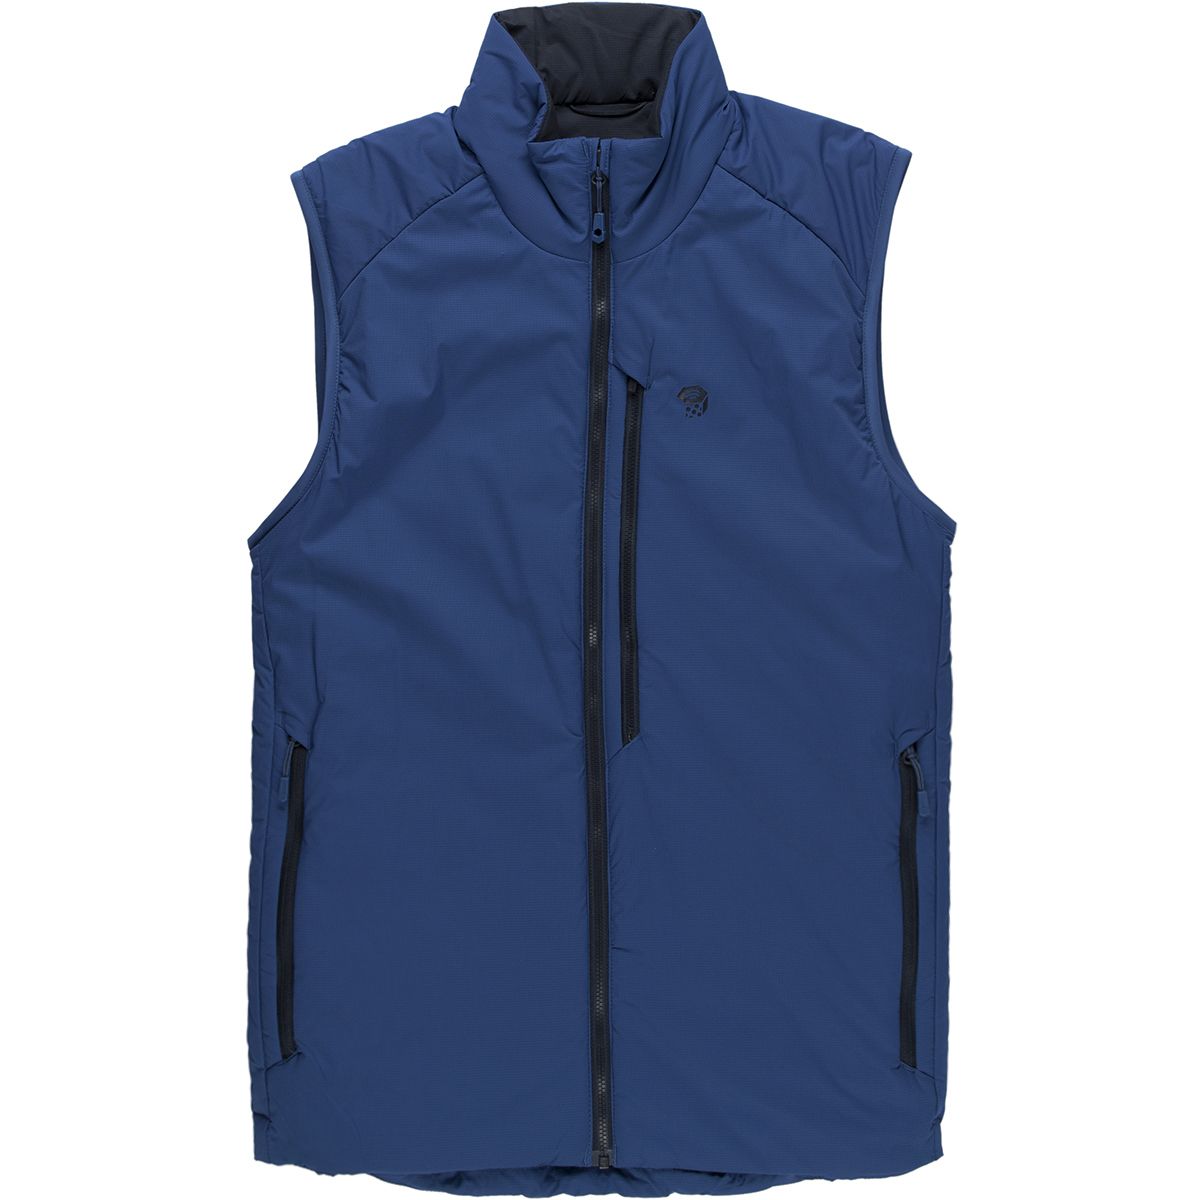 Mountain Hardwear Kor Strata Vest - Men's | Backcountry.com